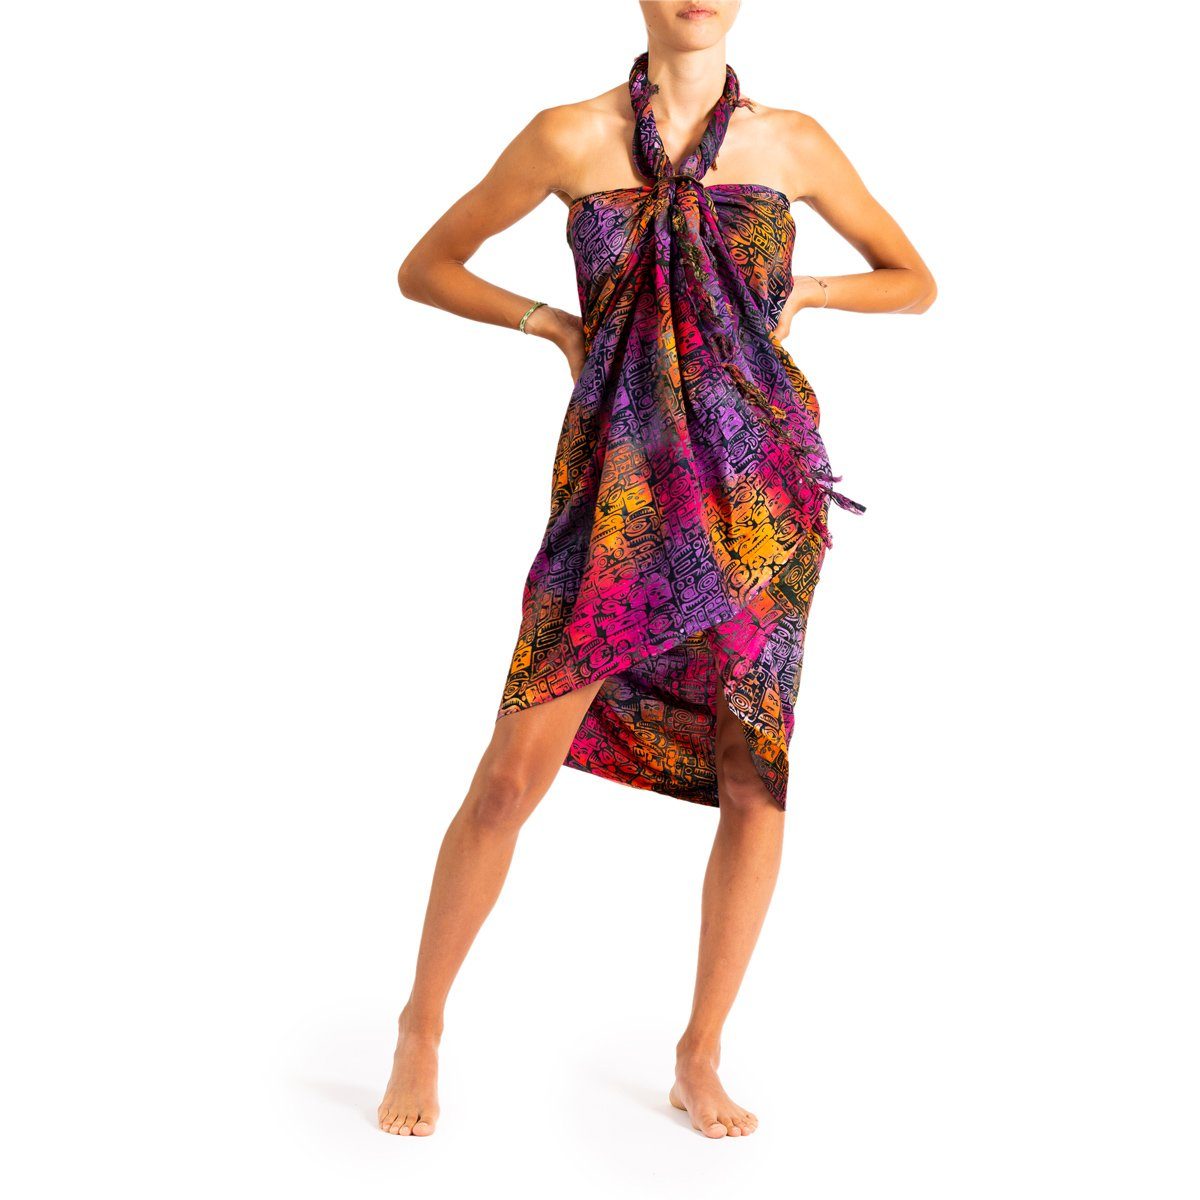 PANASIAM Pareo Sarong Wachsbatik Bunttöne aus hochwertiger Viskose Strandtuch, Strandkleid Bikini Cover-up Tuch für den Strand Schultertuch Halstuch B703 inka